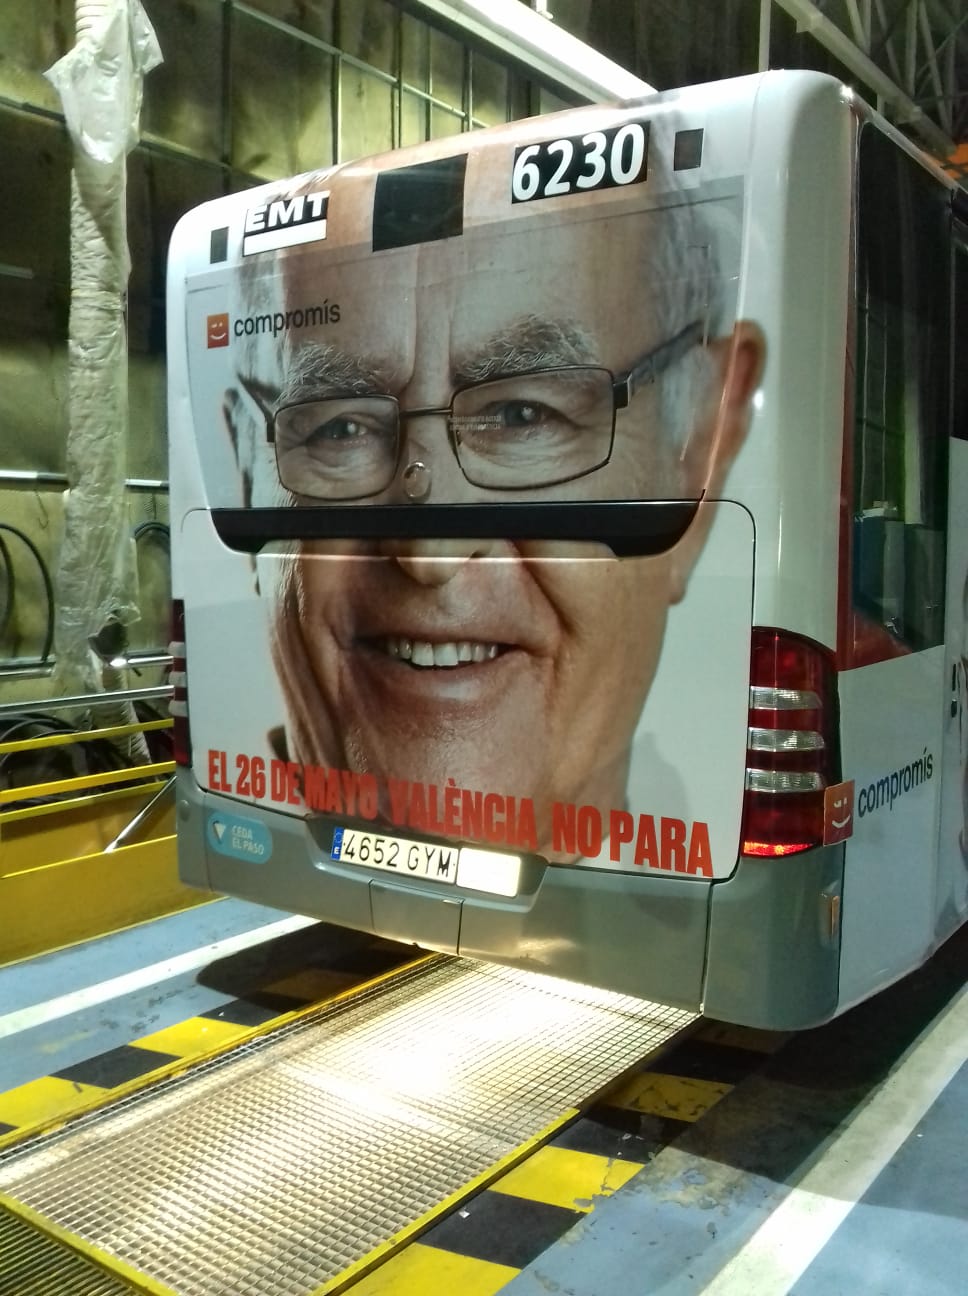 Fotografía publicidad campaña "Compromís" en autobús semiintegral